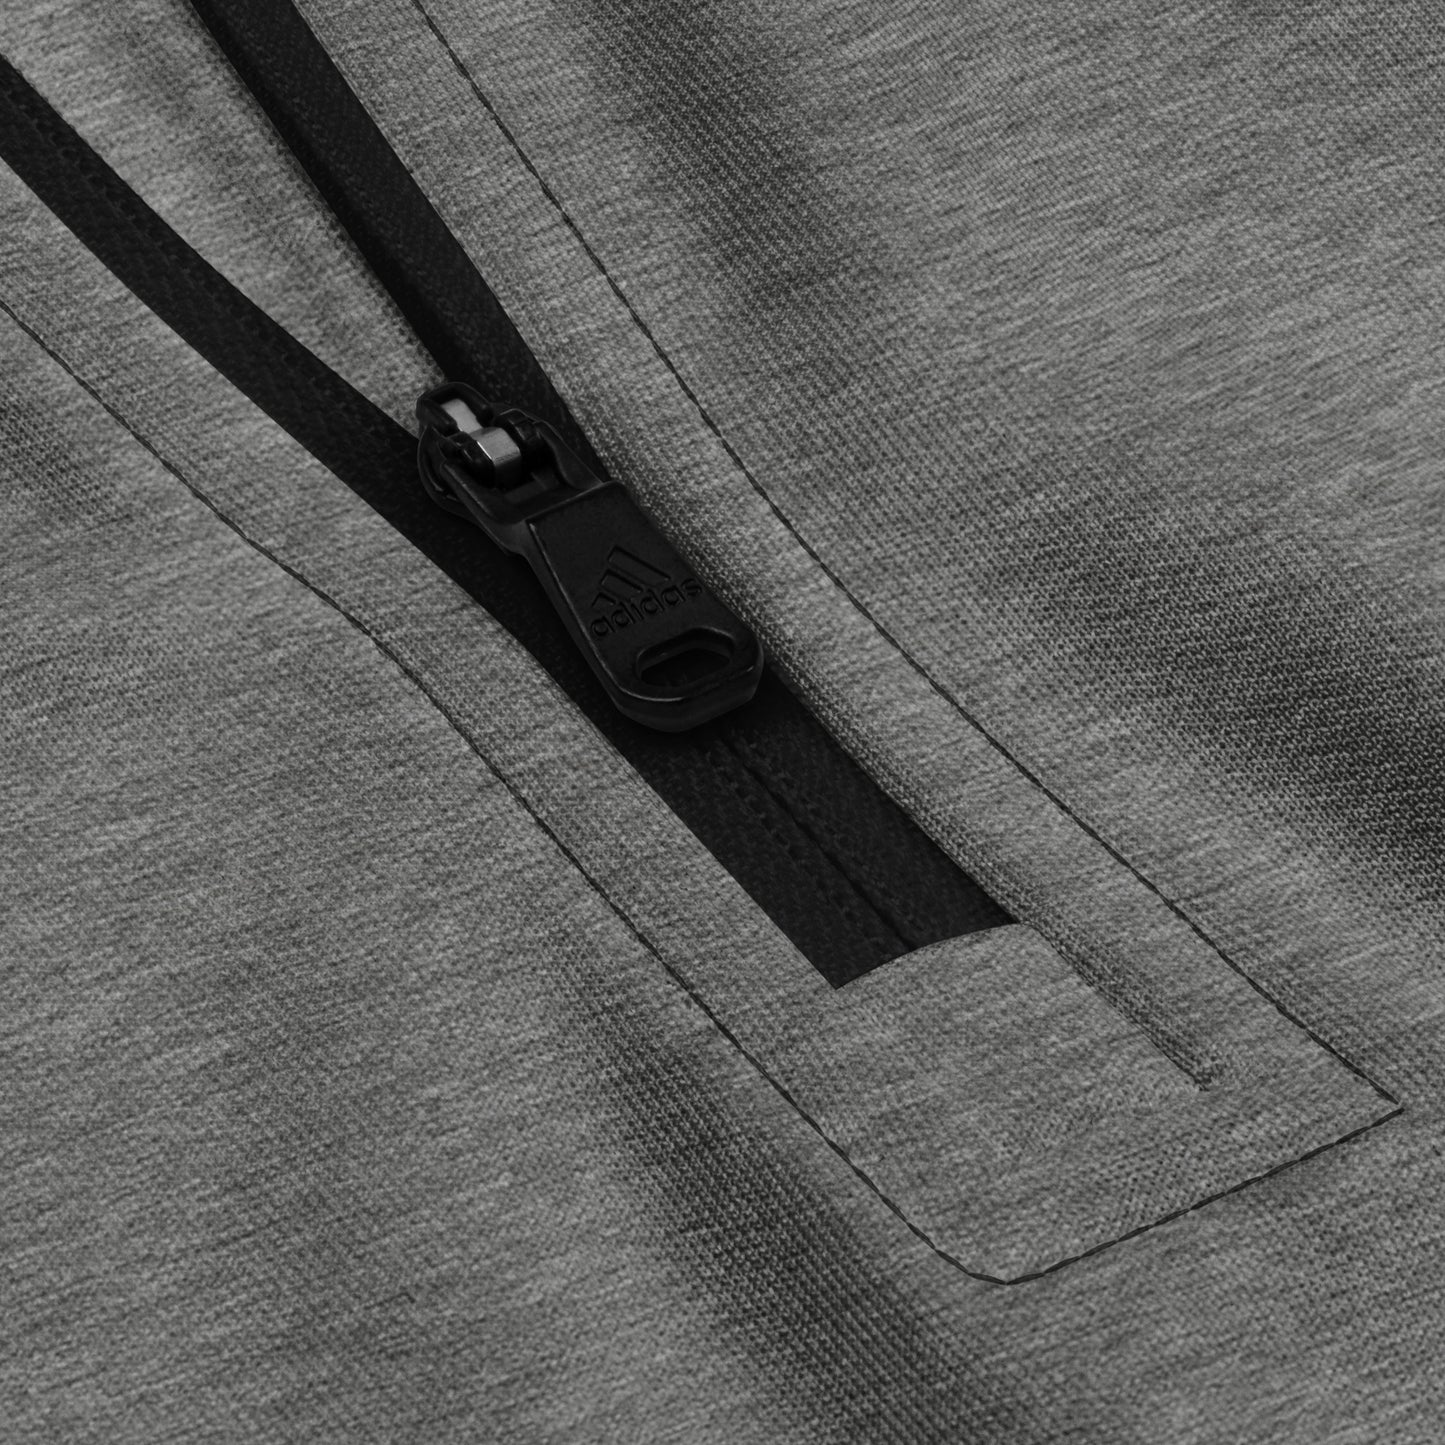 Team Sirius - Adidas quarter-zip pullover